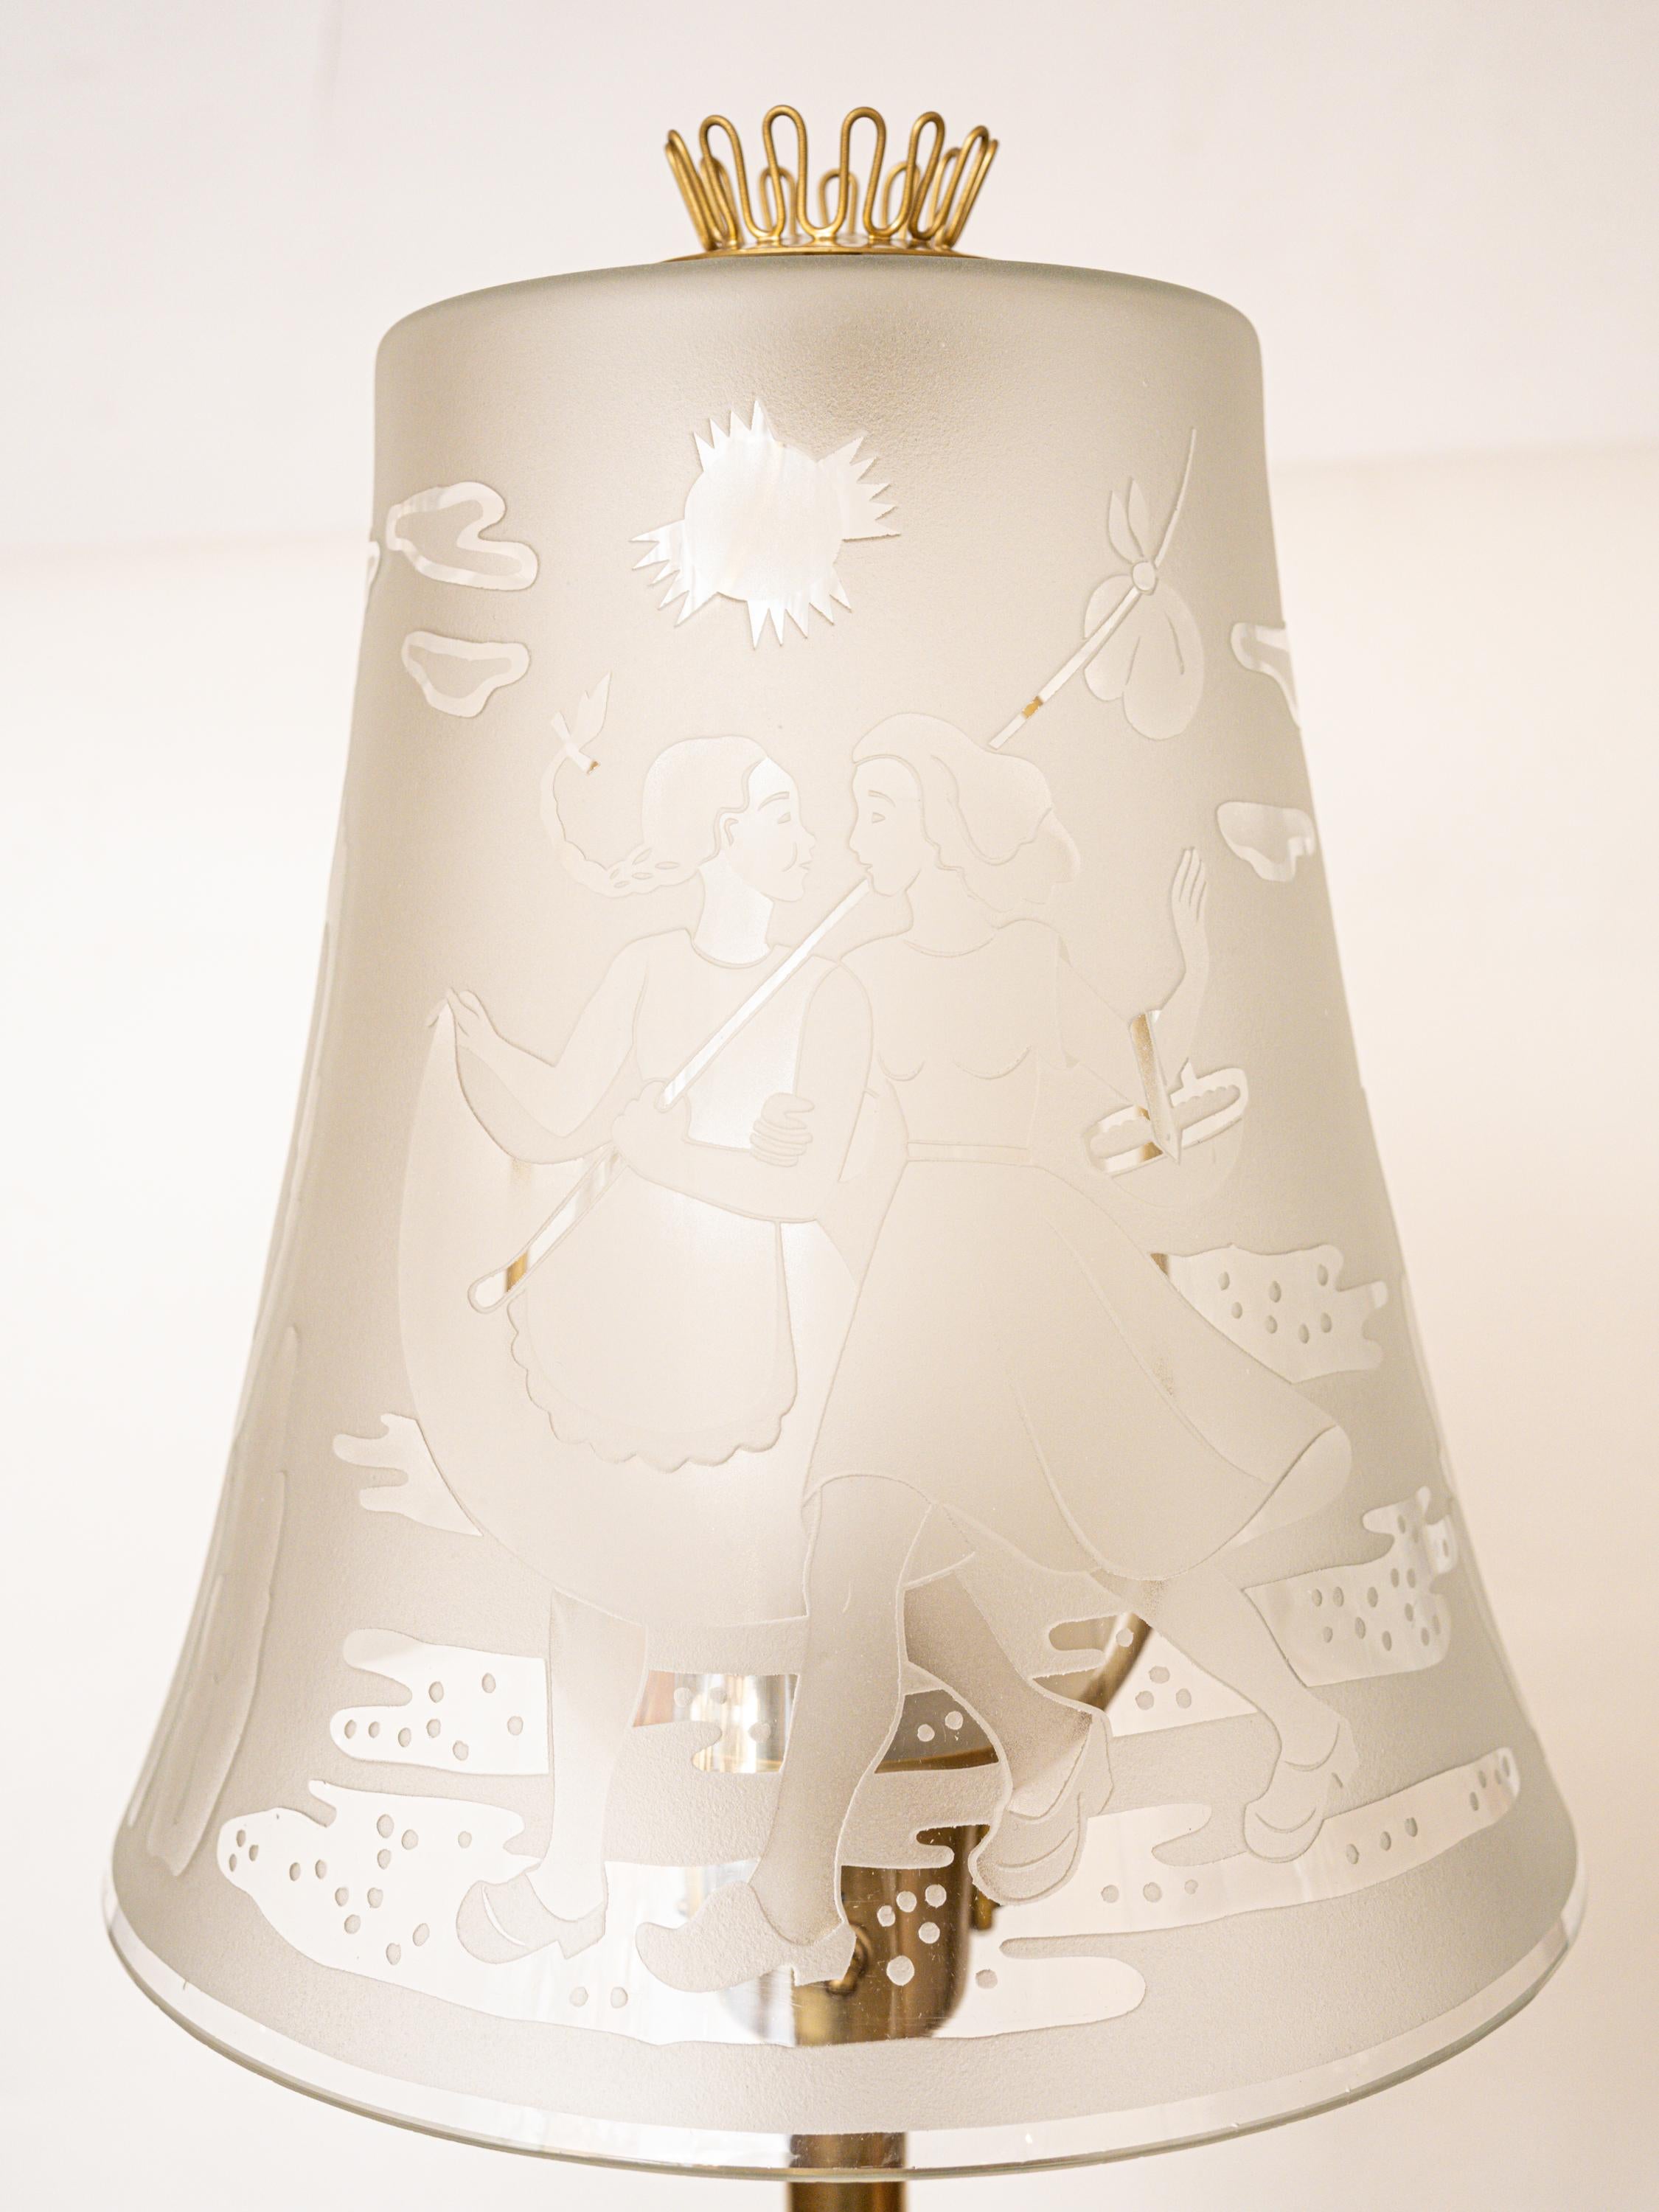 Mid-20th Century 1940s U. Skogh Floor Lamp Produced by Glössner & Co. For Sale